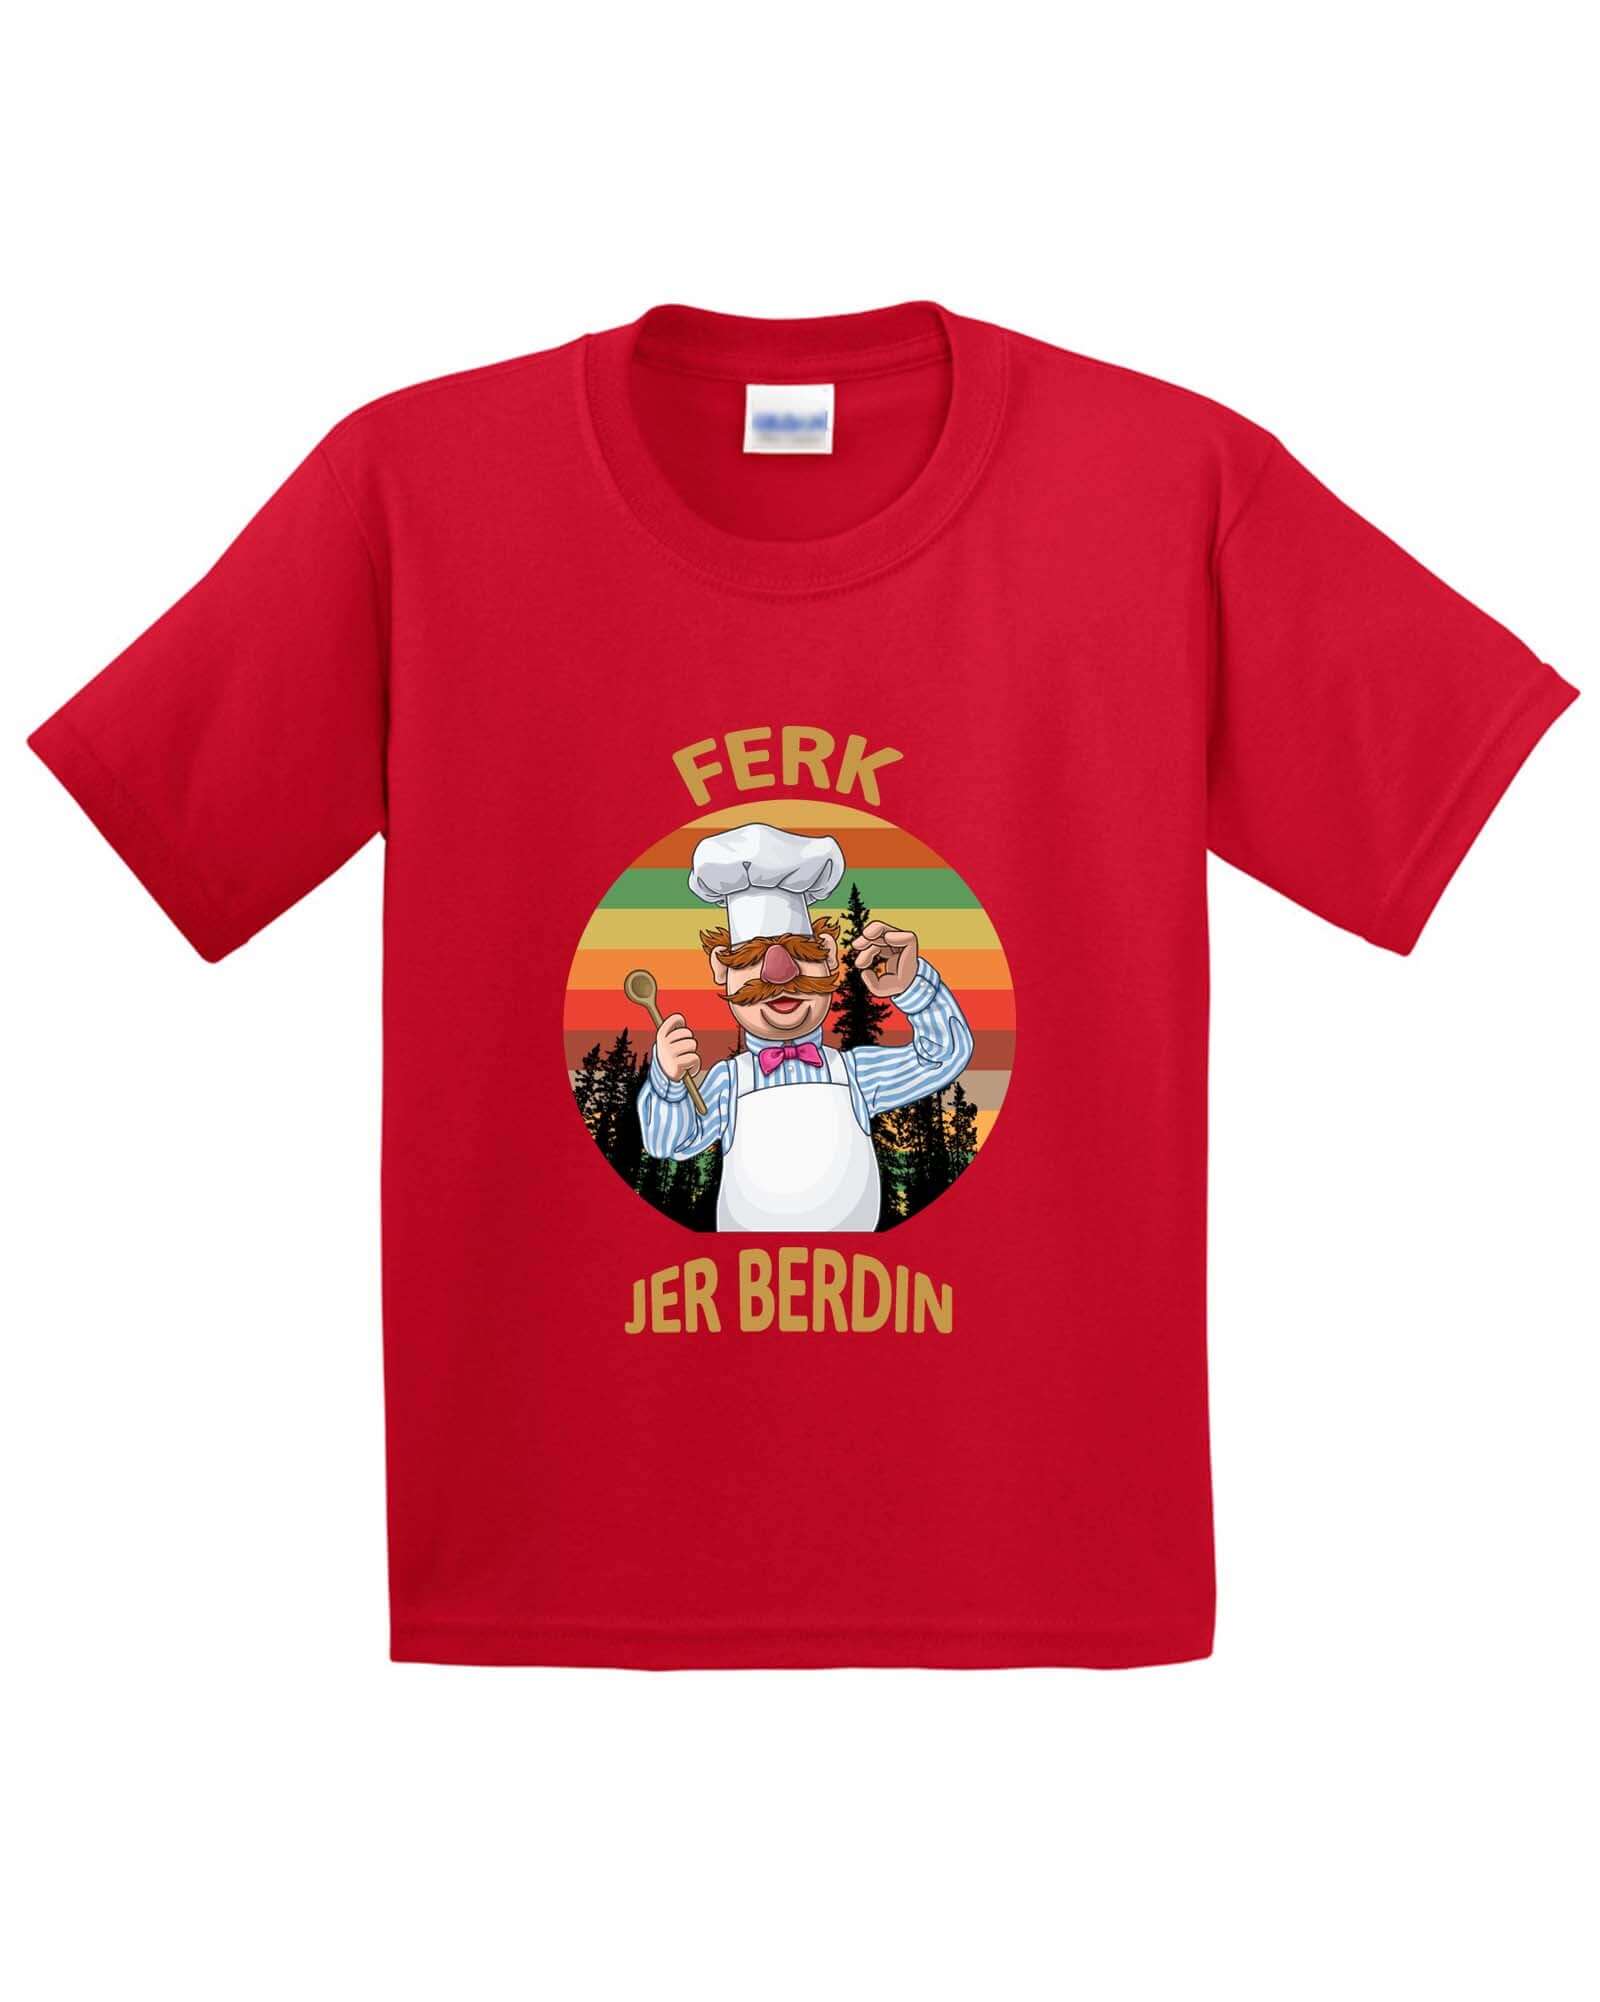 Ferk Jer Berdin Kids T-Shirt - ApparelinClick